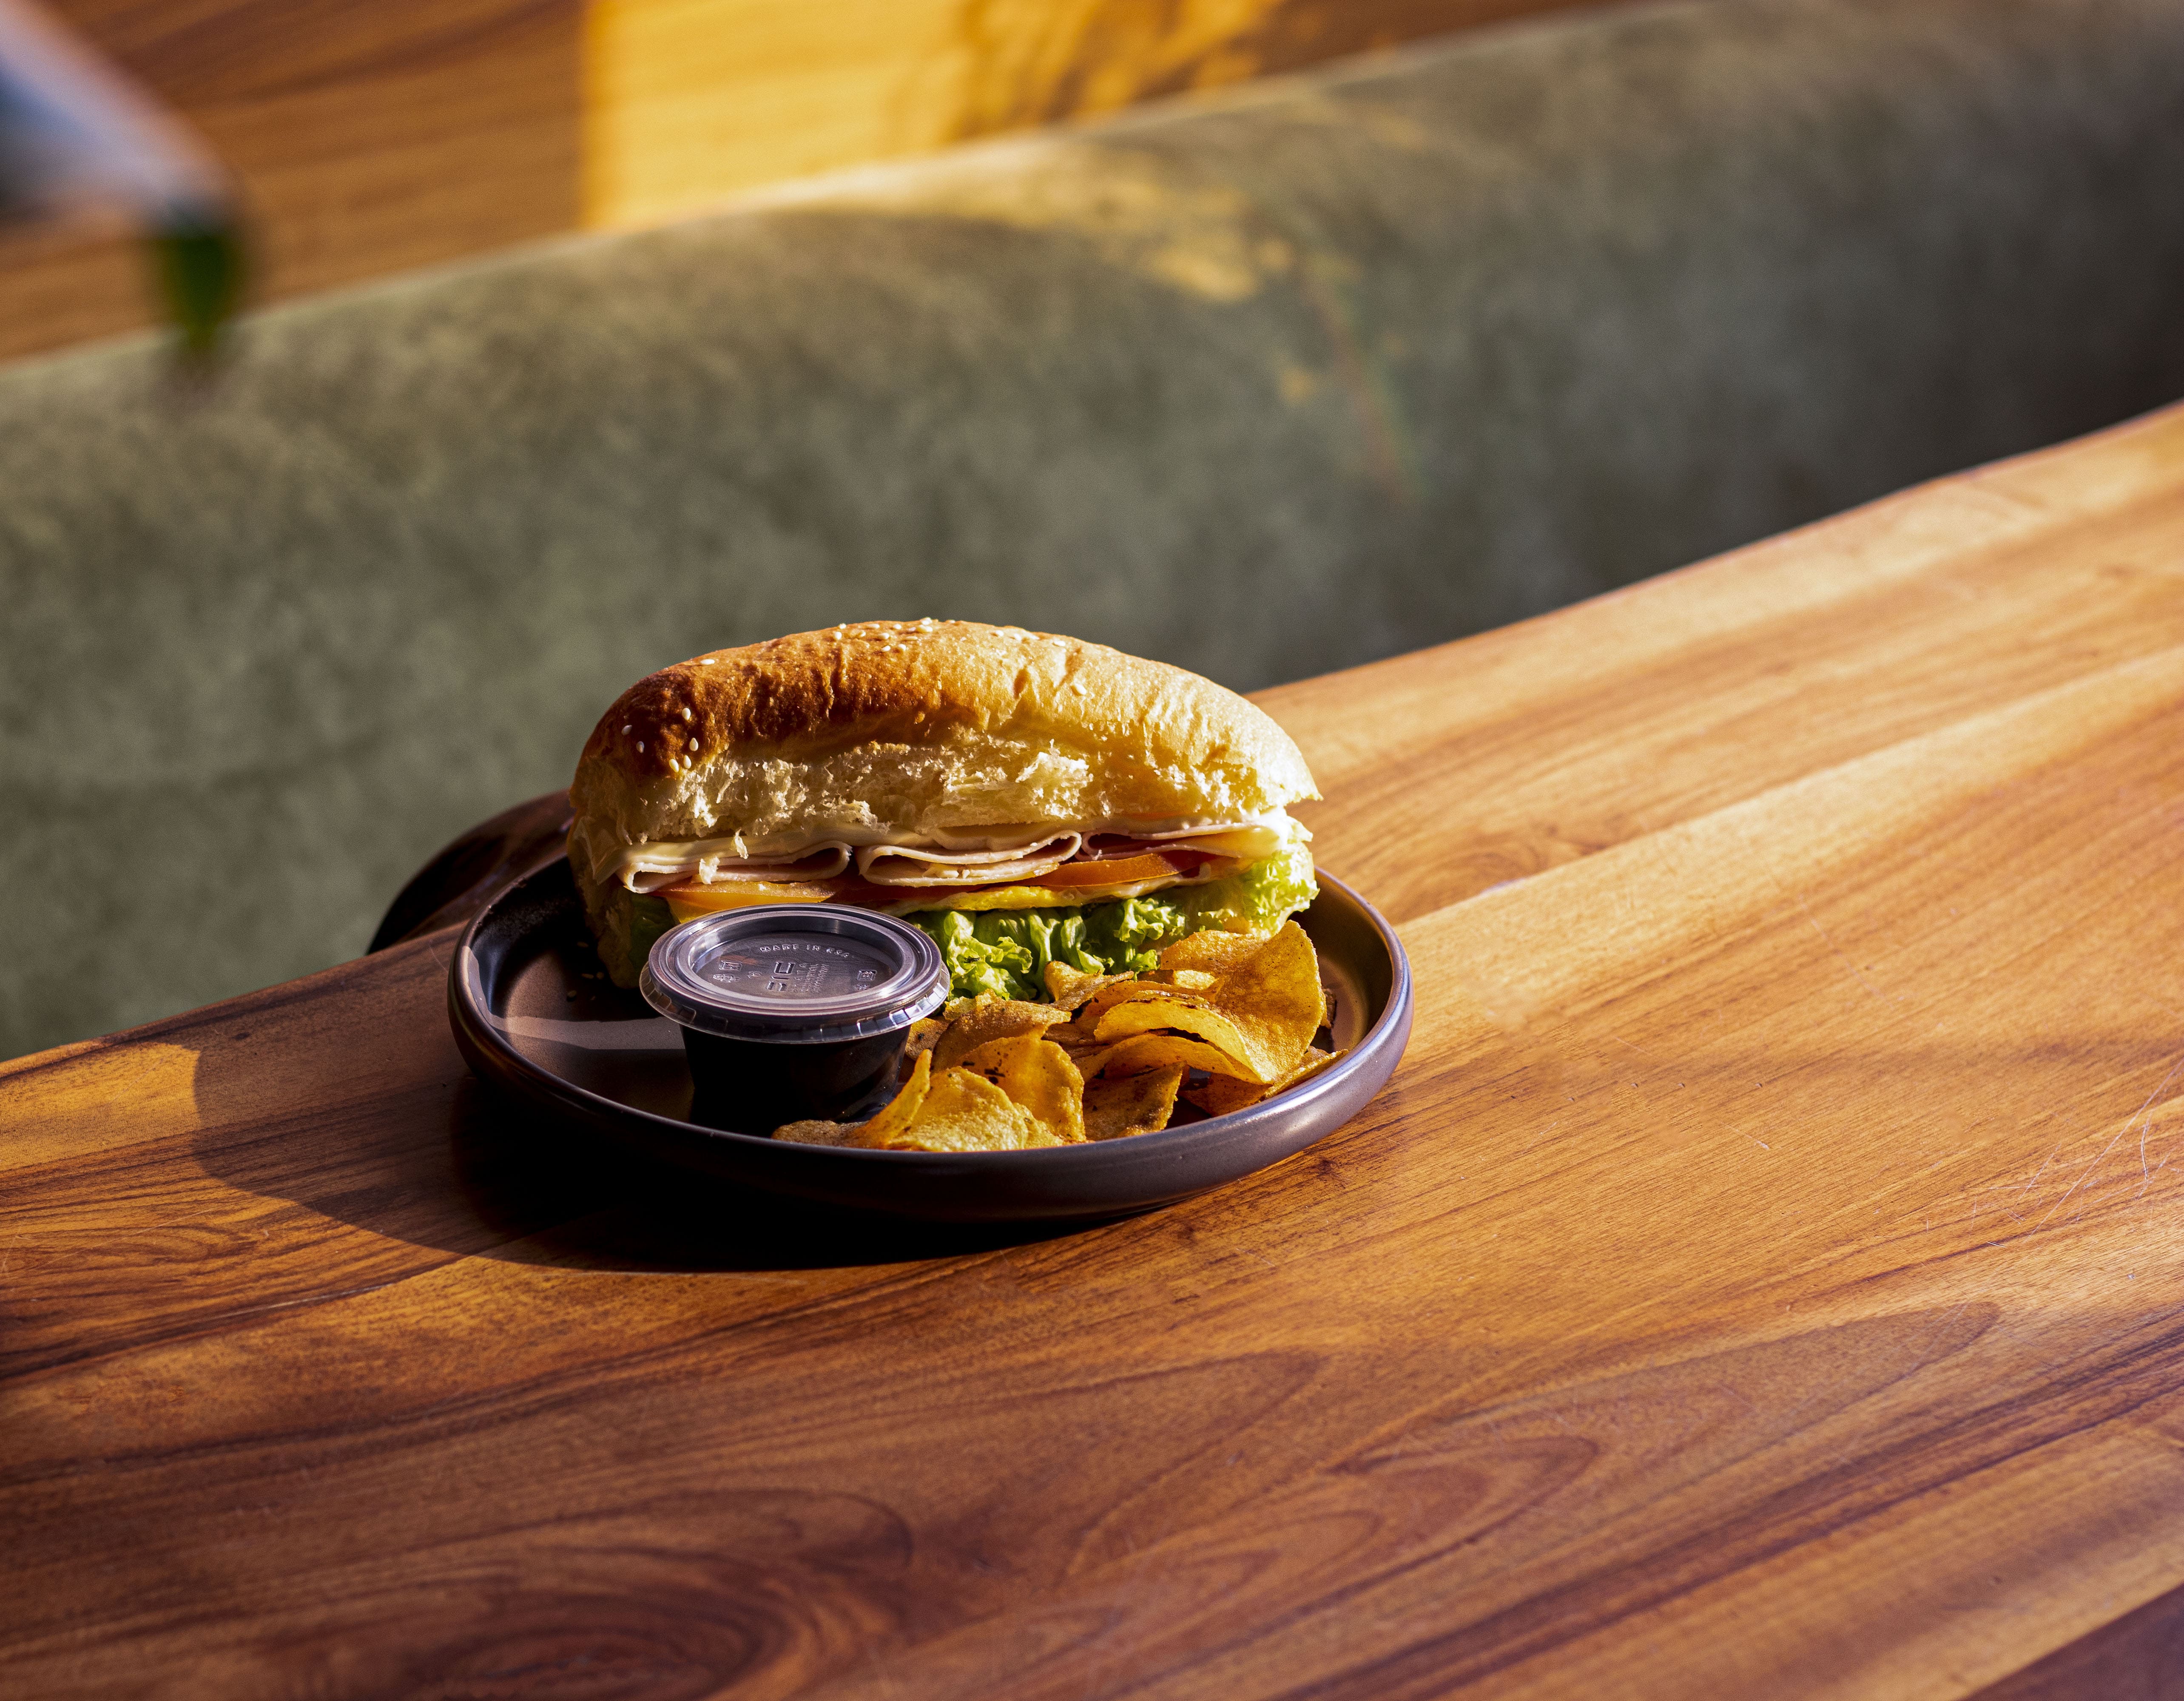 ChickenTurkish Sandwich|ساندوتش دجاج تركي